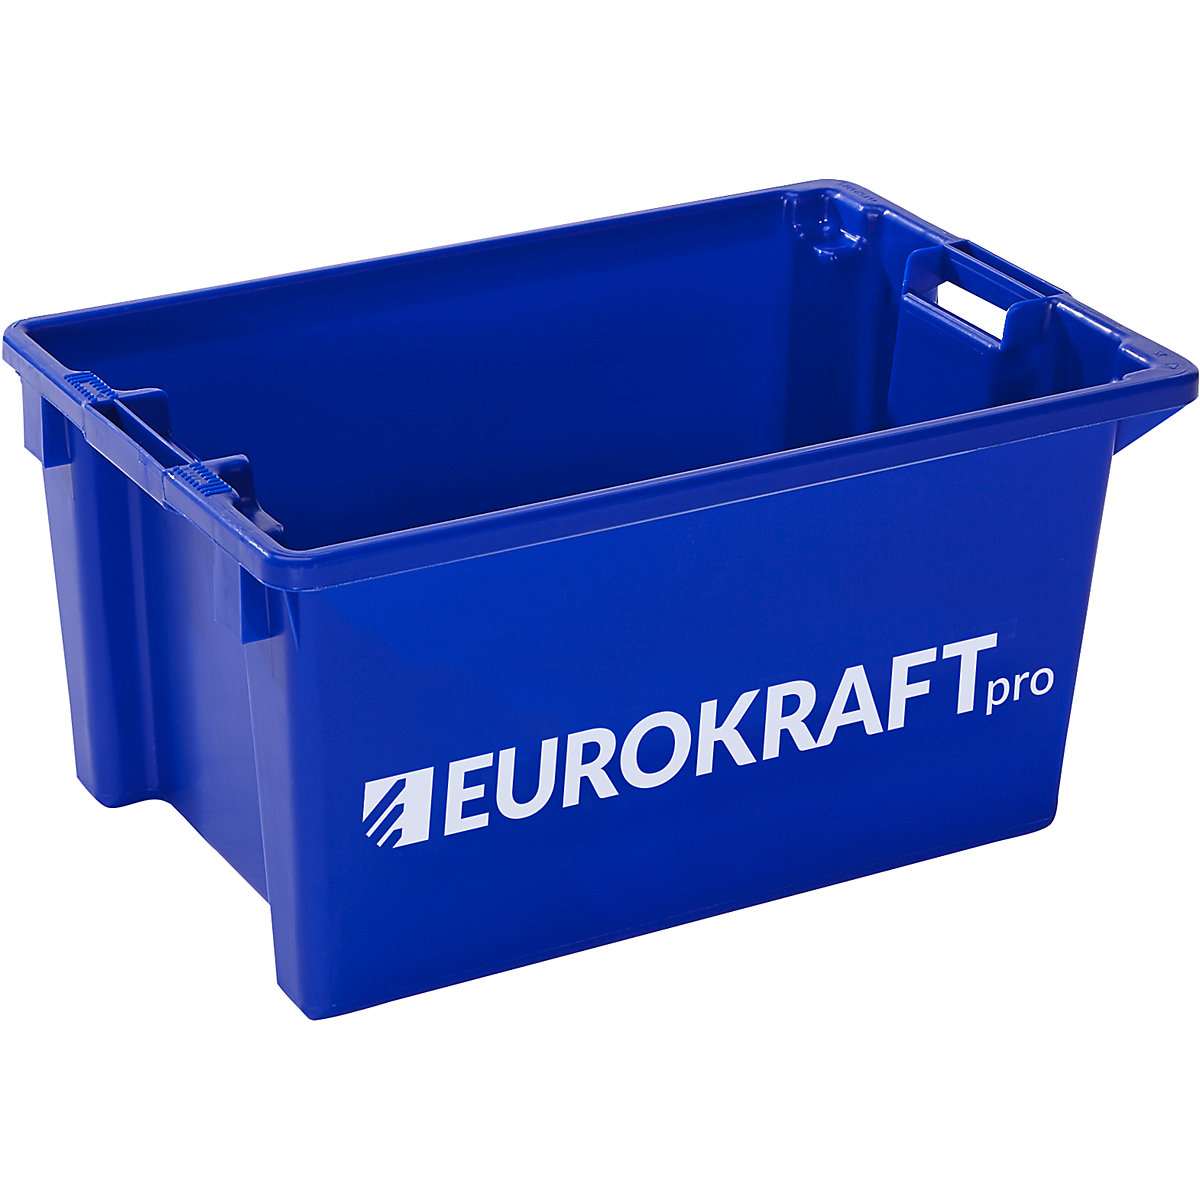 Cutie de depozitare – eurokraft pro, volum 50 litri, min. 3 buc., albastră